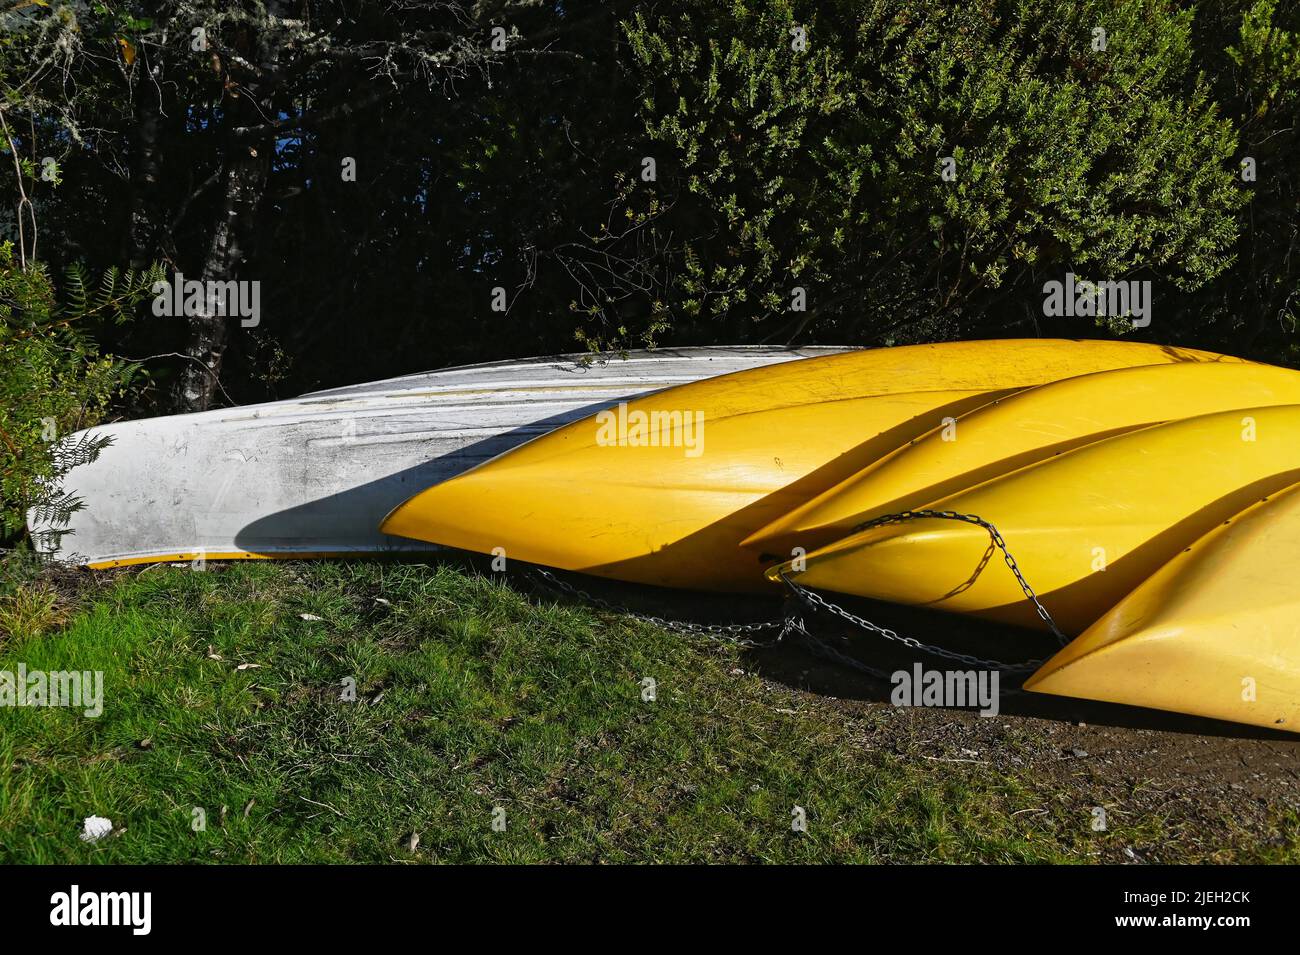 Les kayaks jaunes et blancs sont à l'envers pour qu'ils ne se remplissent pas d'eau et de débris. Ils sont reliés entre eux pour que le ne soit pas volé ou déplacé. Banque D'Images